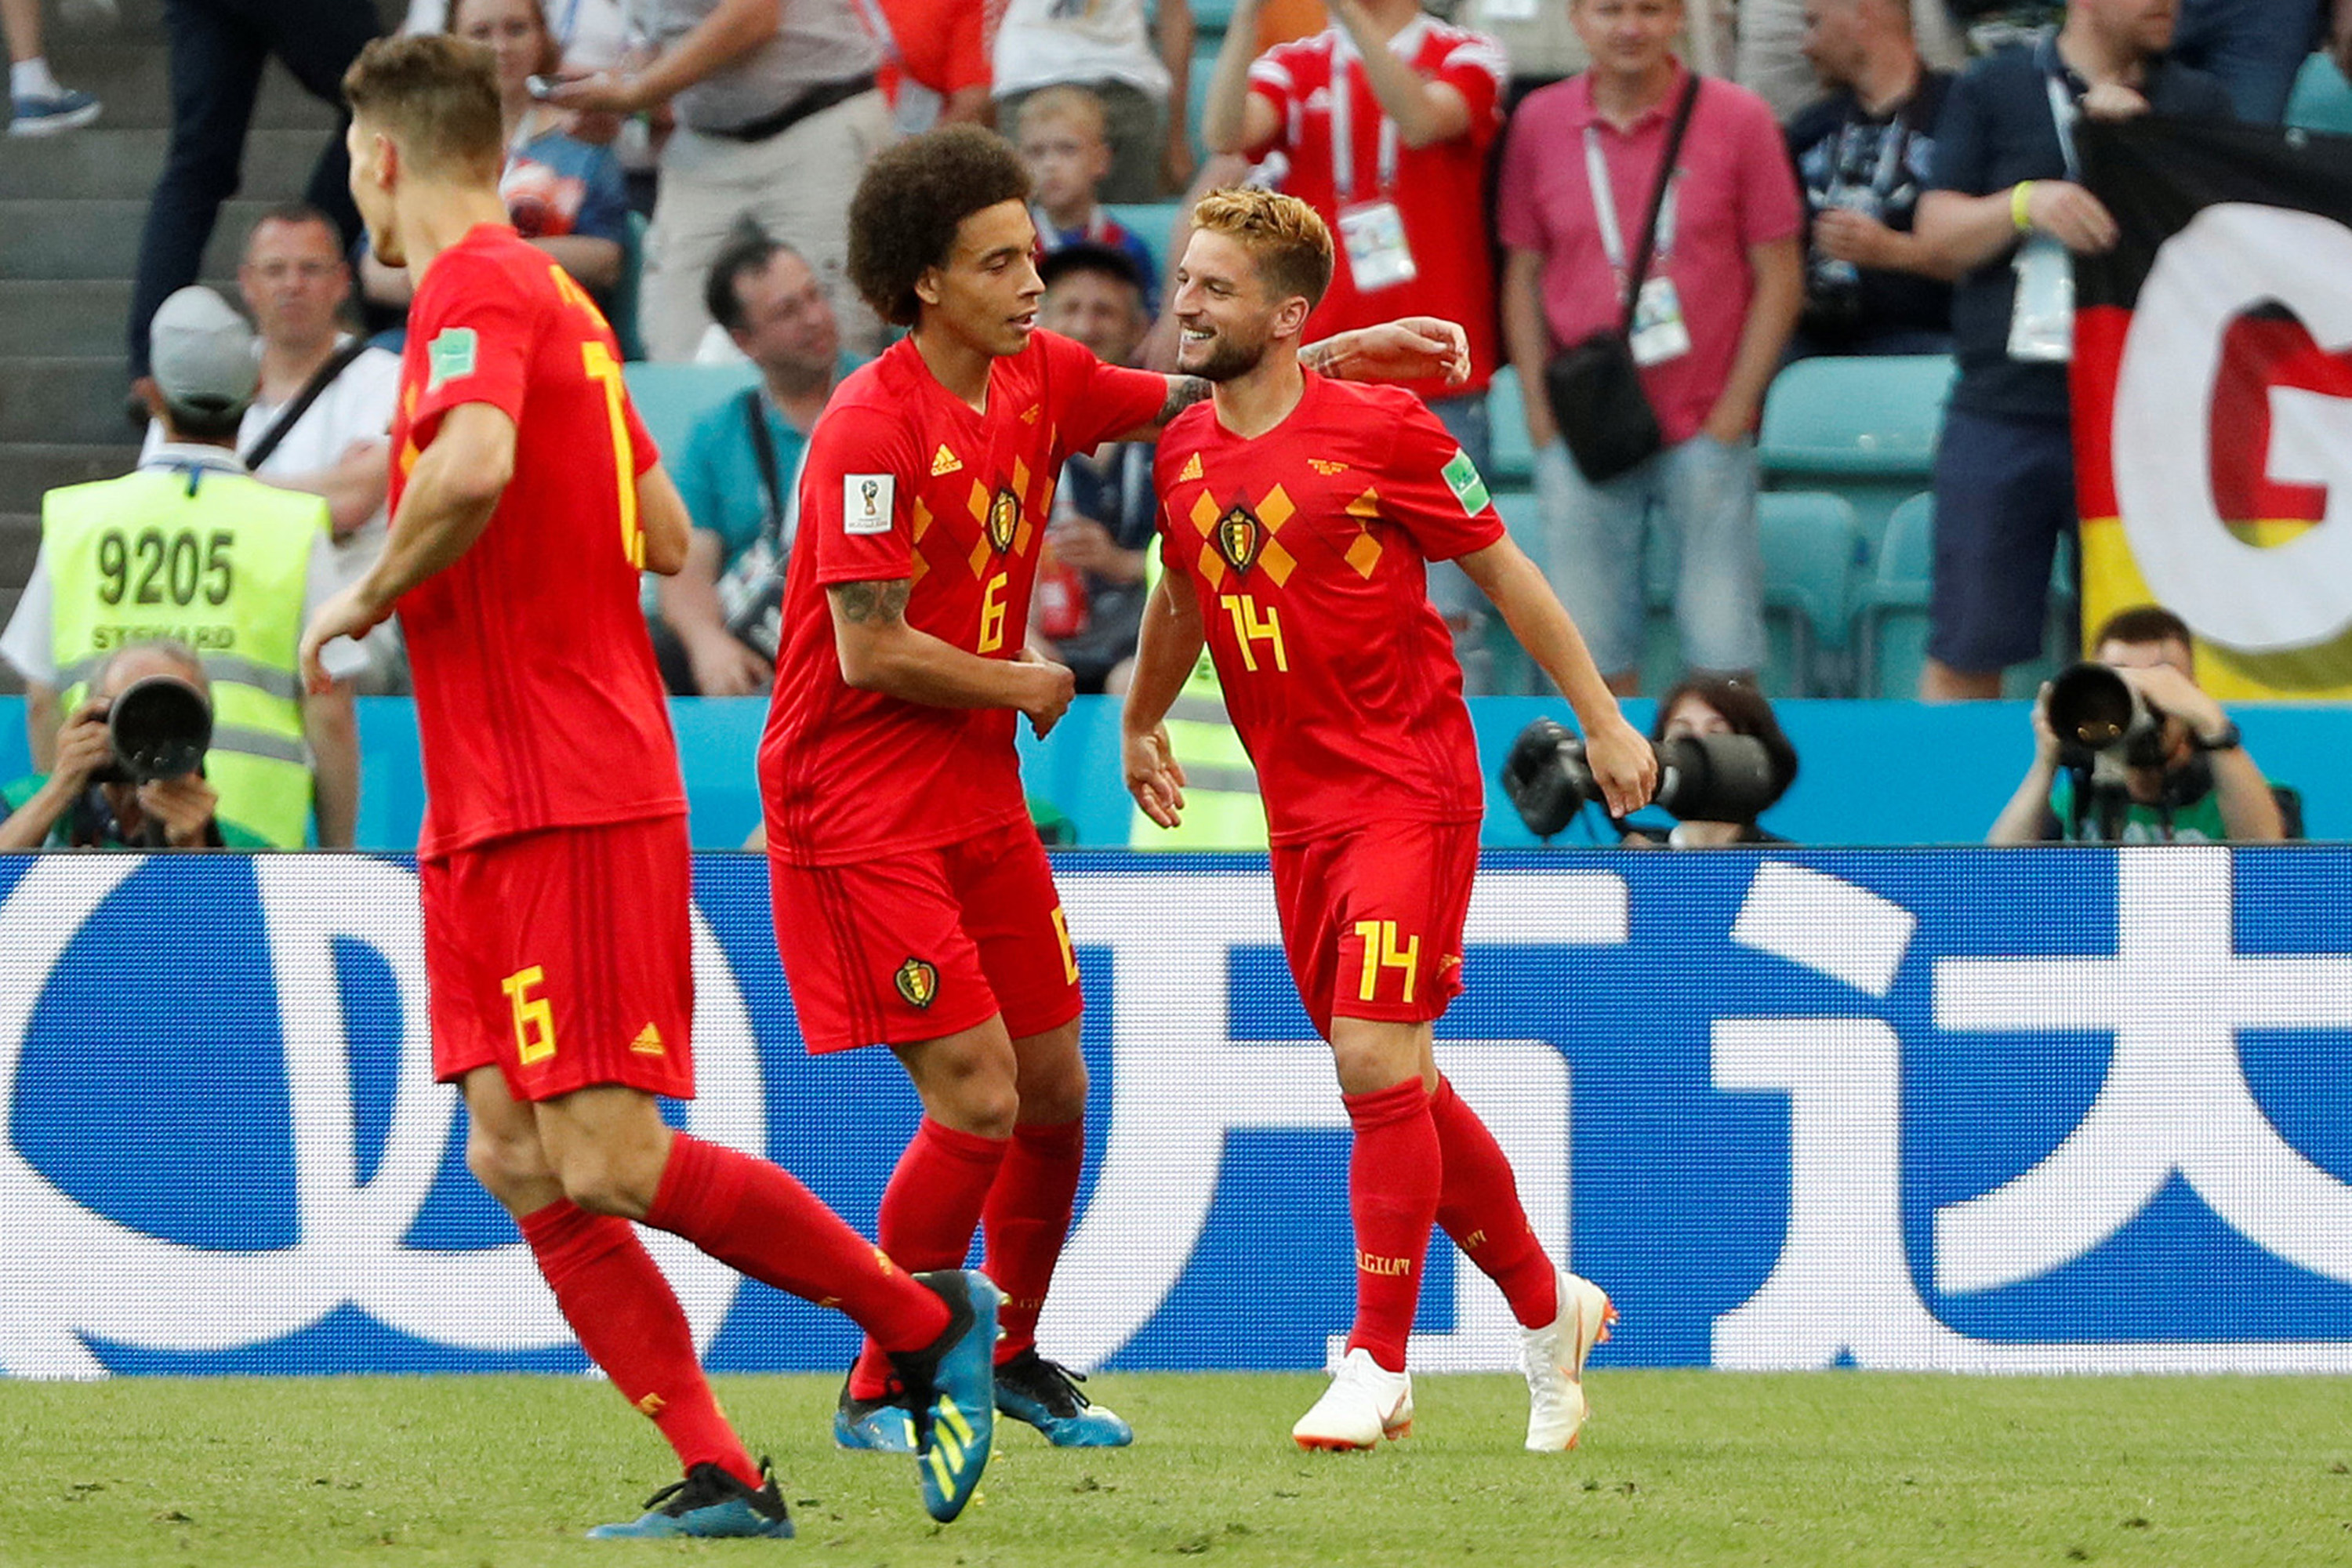 Saiba como assistir a Bélgica x Japão pela Copa do Mundo 2018